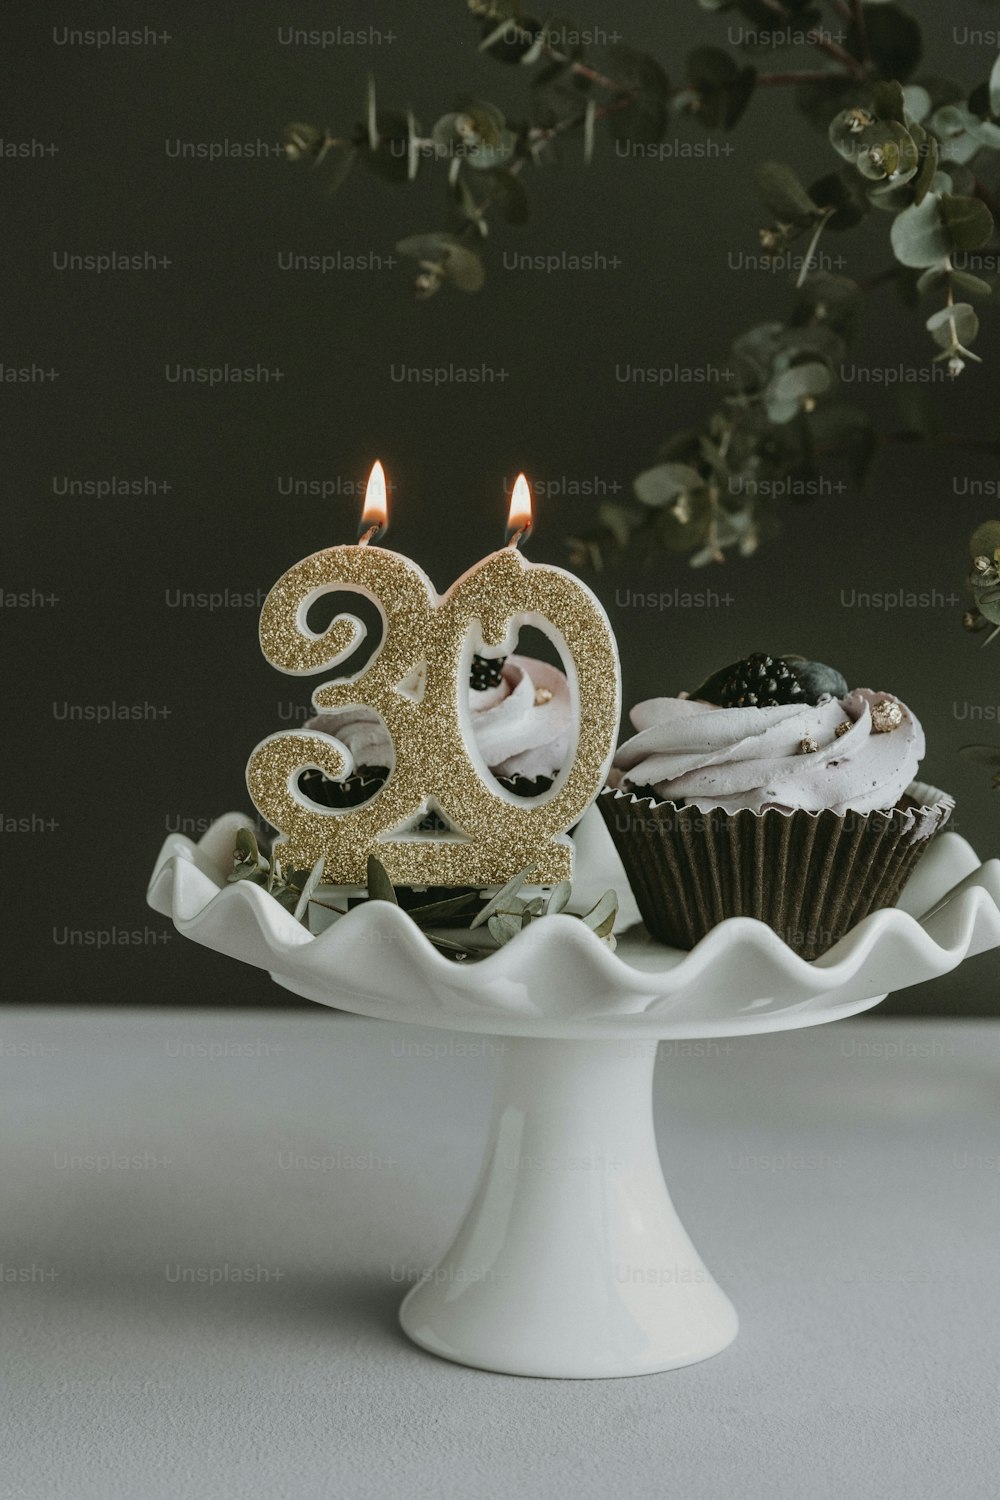 un plato de pastel blanco cubierto con cupcakes y una vela